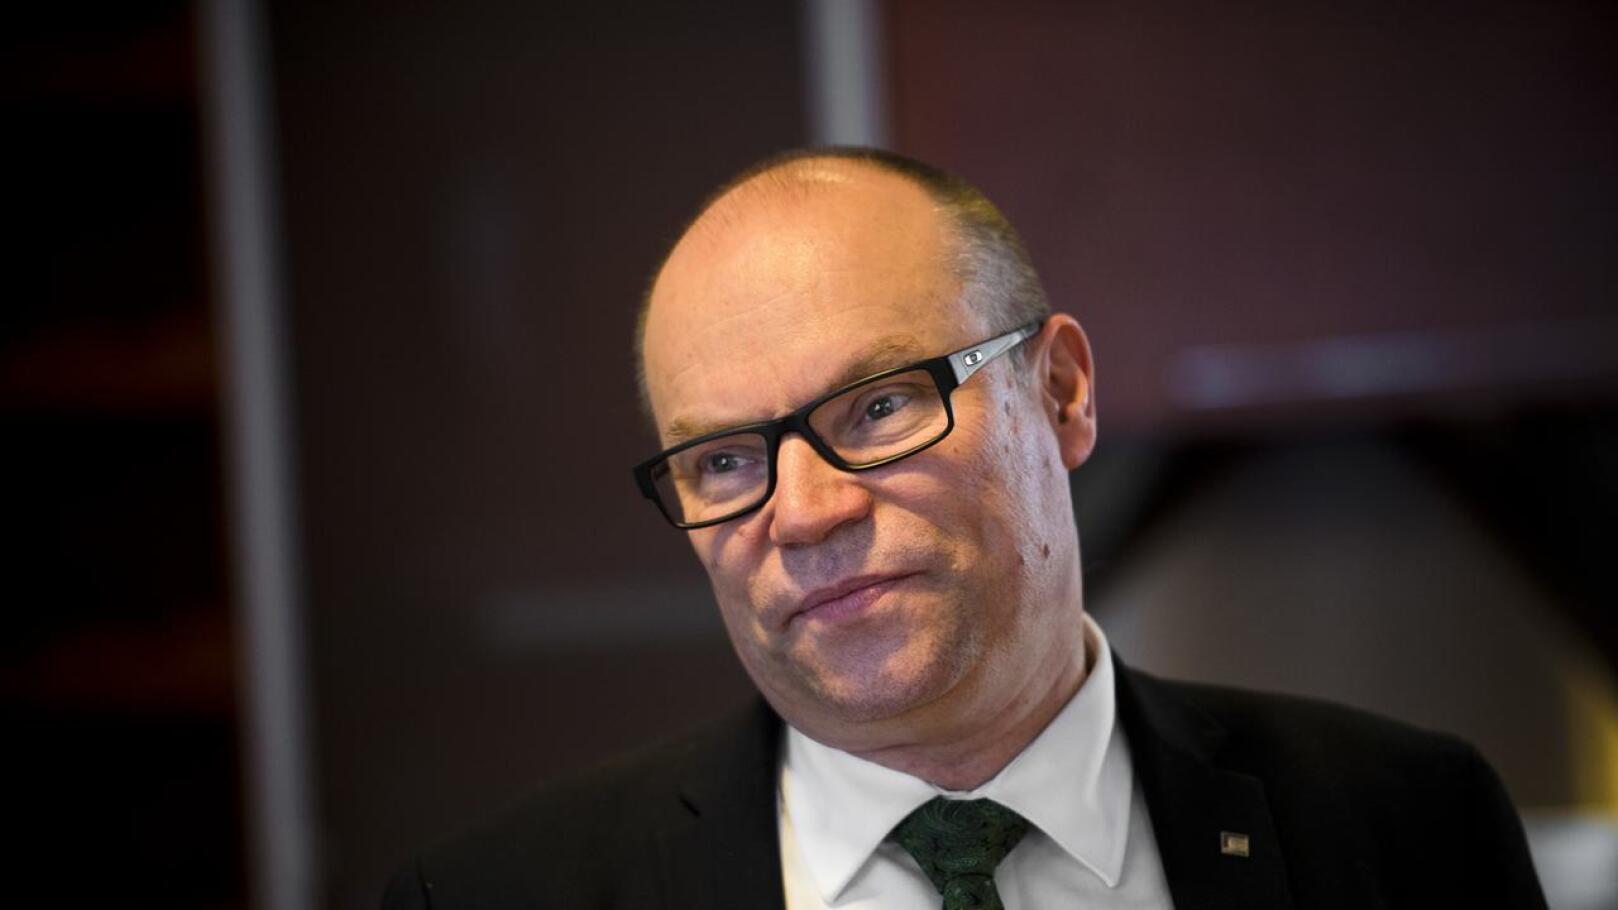 Kansanedustaja Mikko Kinnunen on mukana pohjoispohjalaisten kansanedutajien vaatimuksessa Venäjä-kompensaatiosta Hanhikiven vaikutusalueelle.